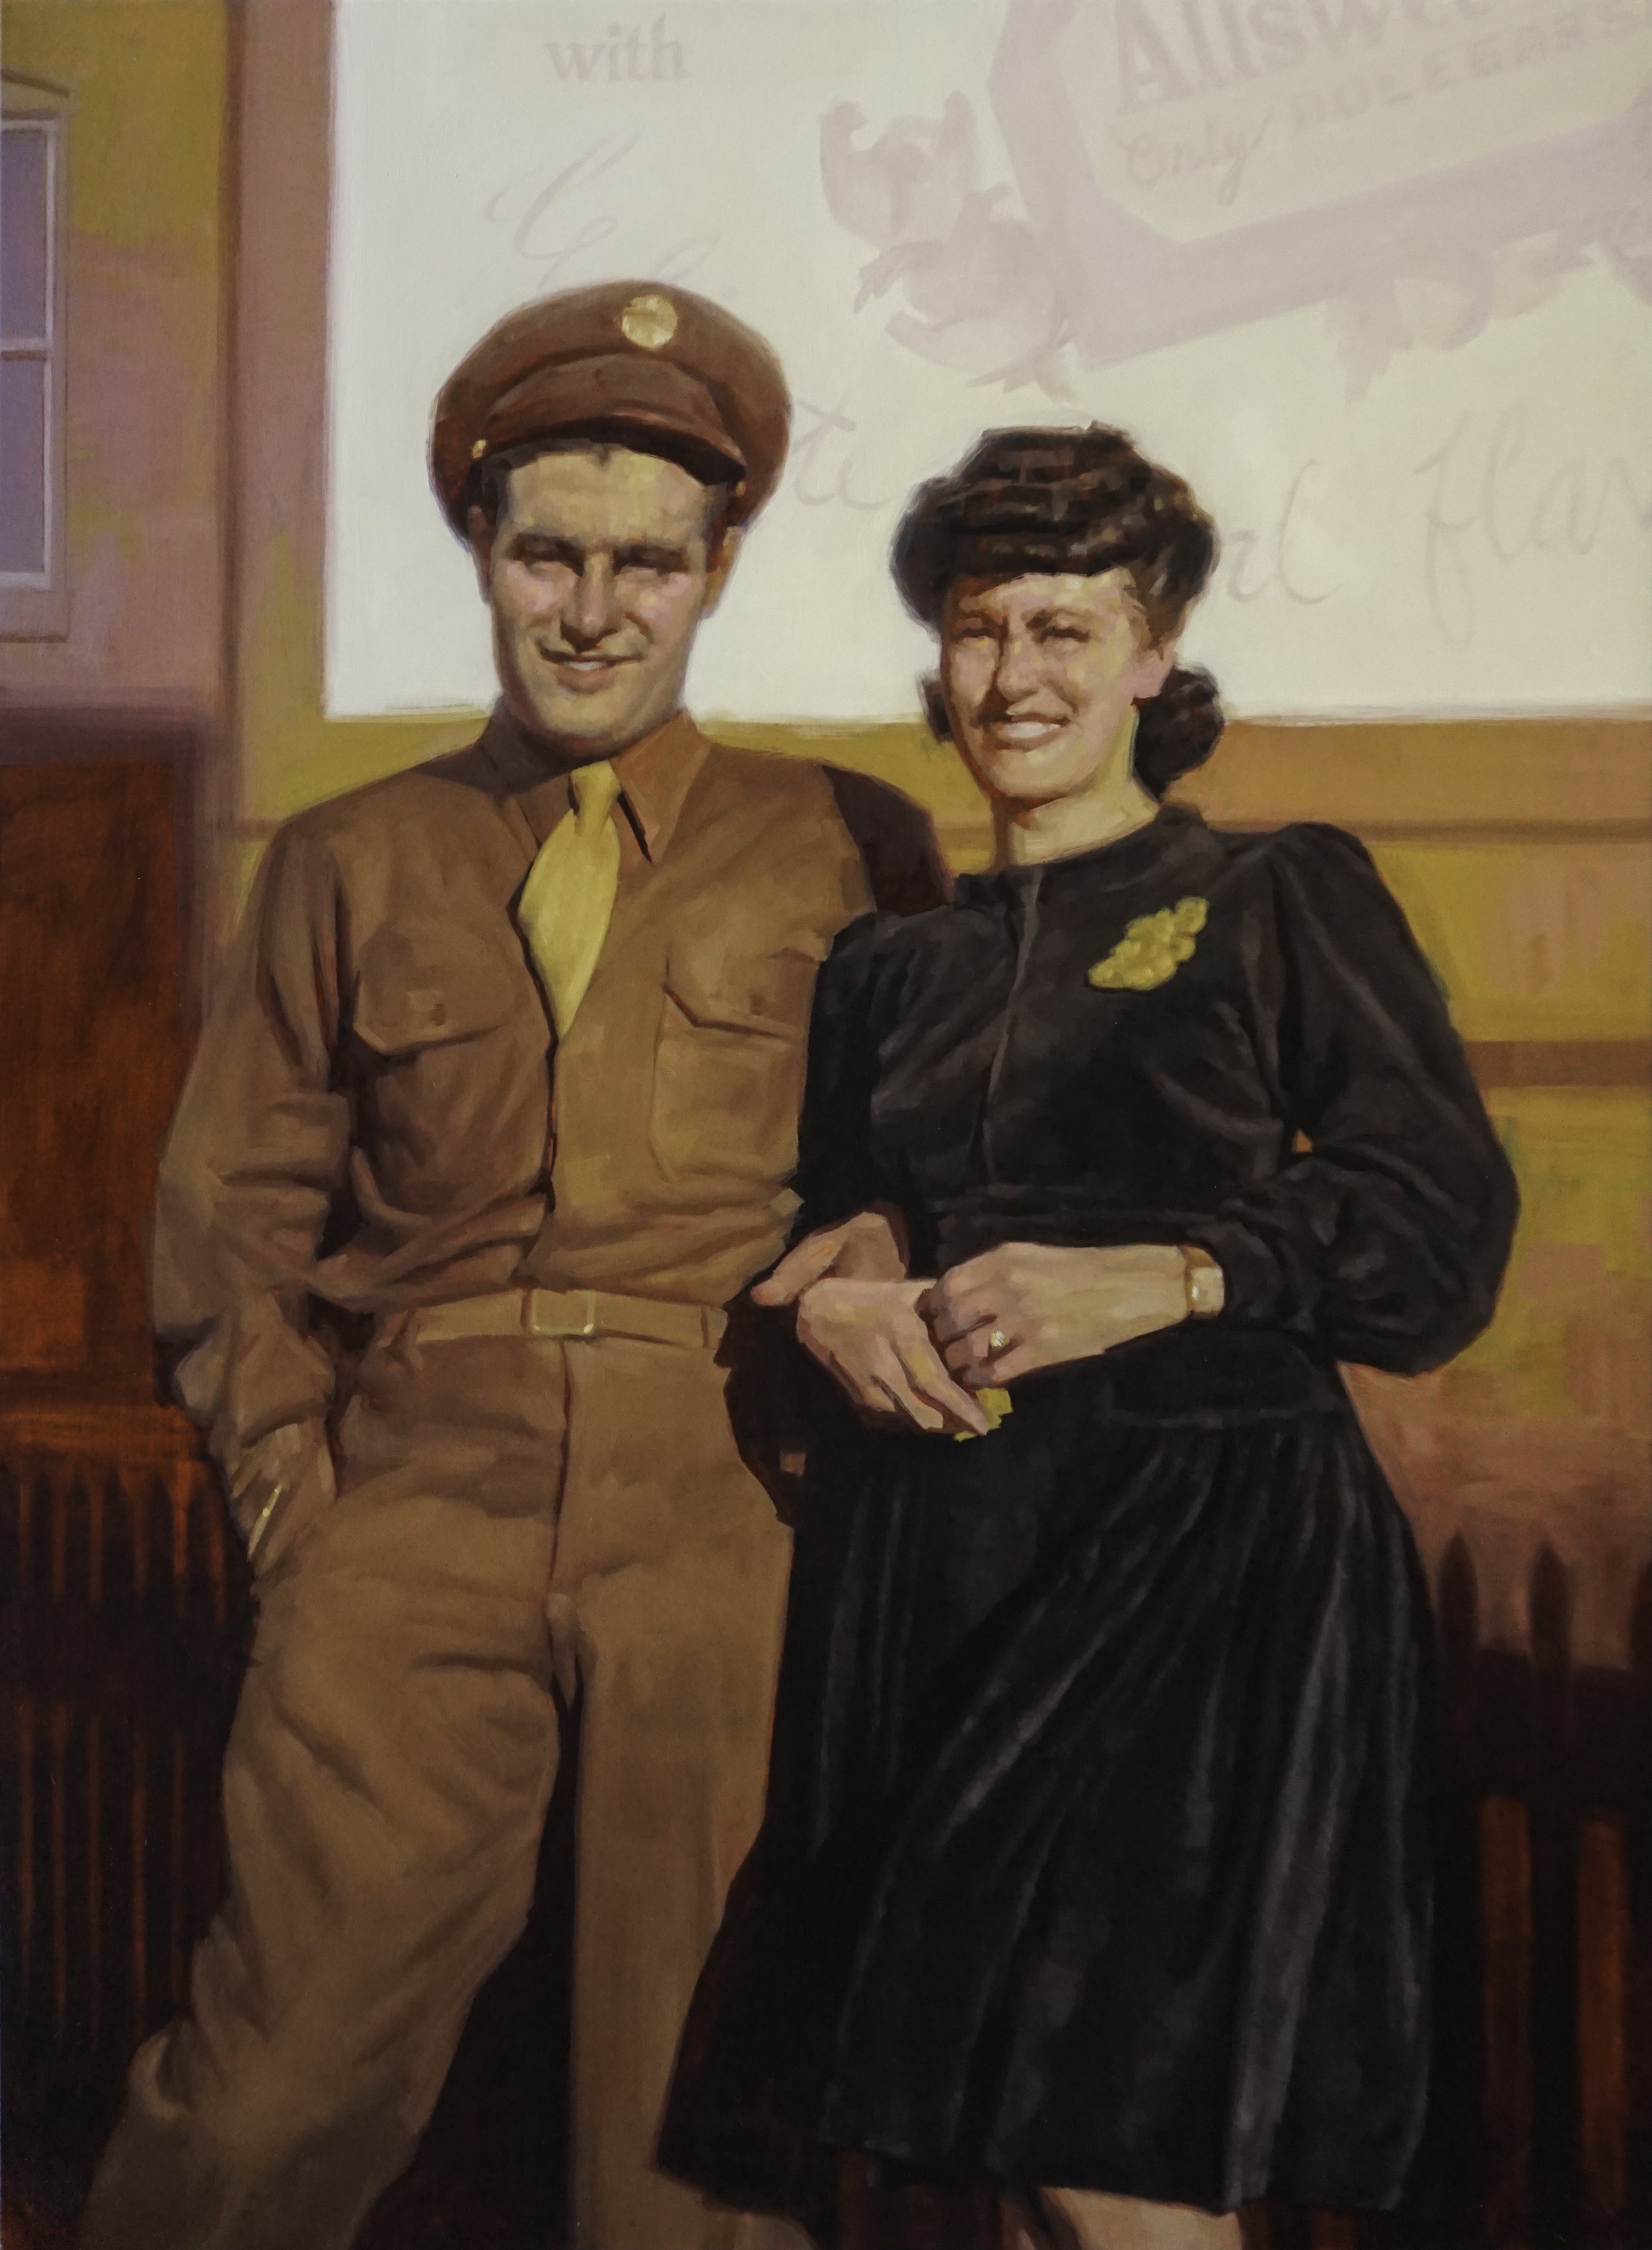 Victor and Loretta Miramontes circa 1940's